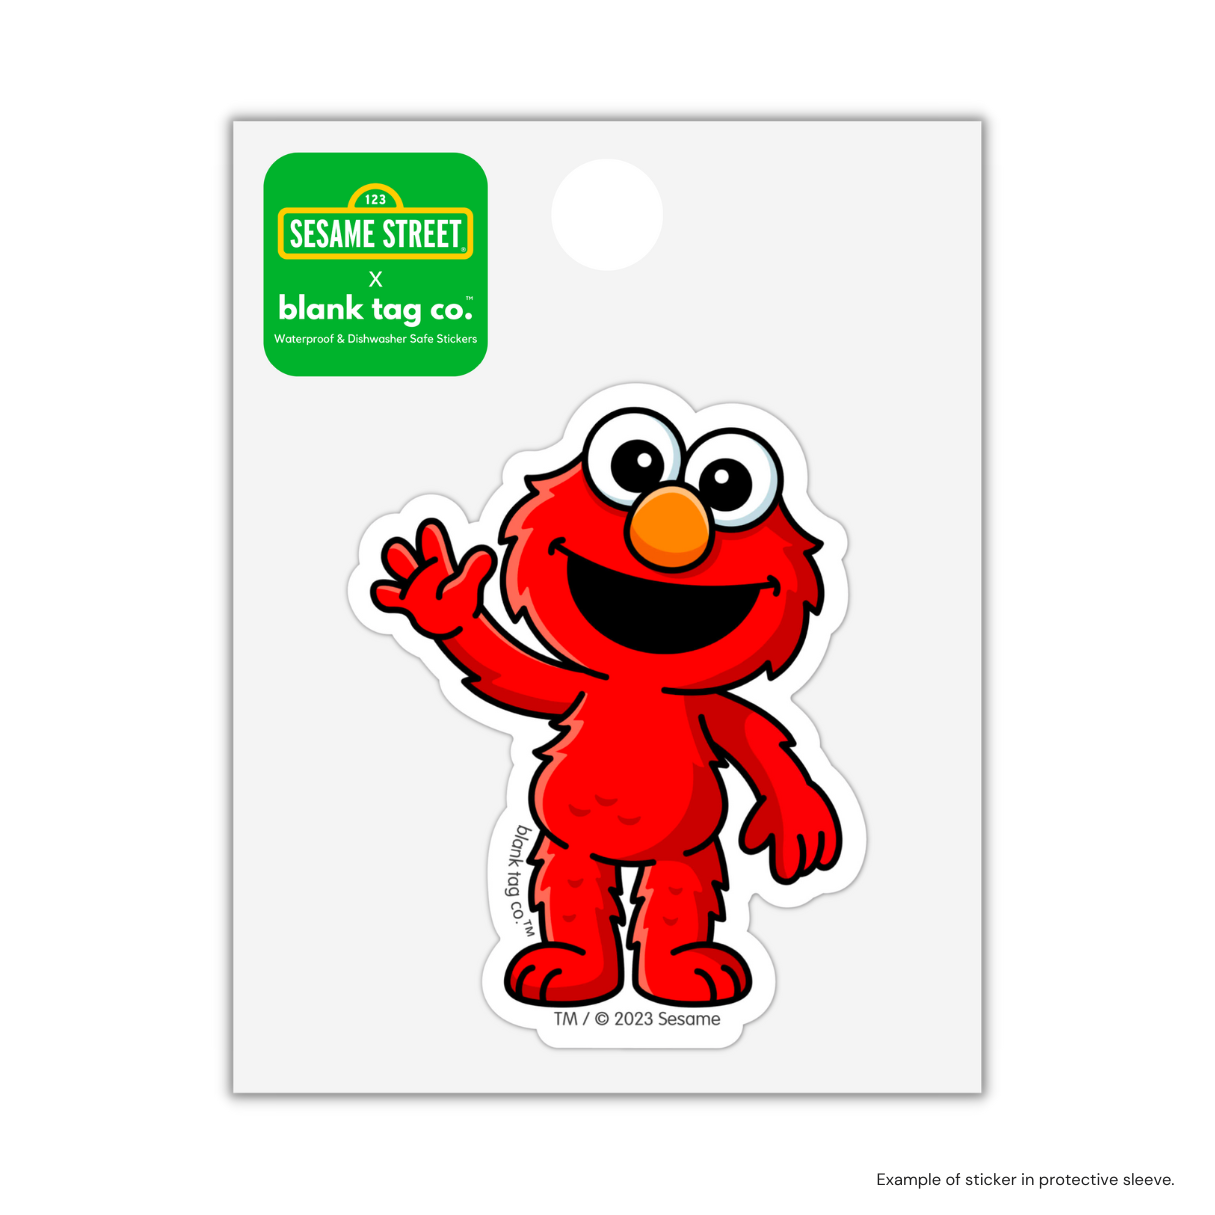 The Elmo Sticker